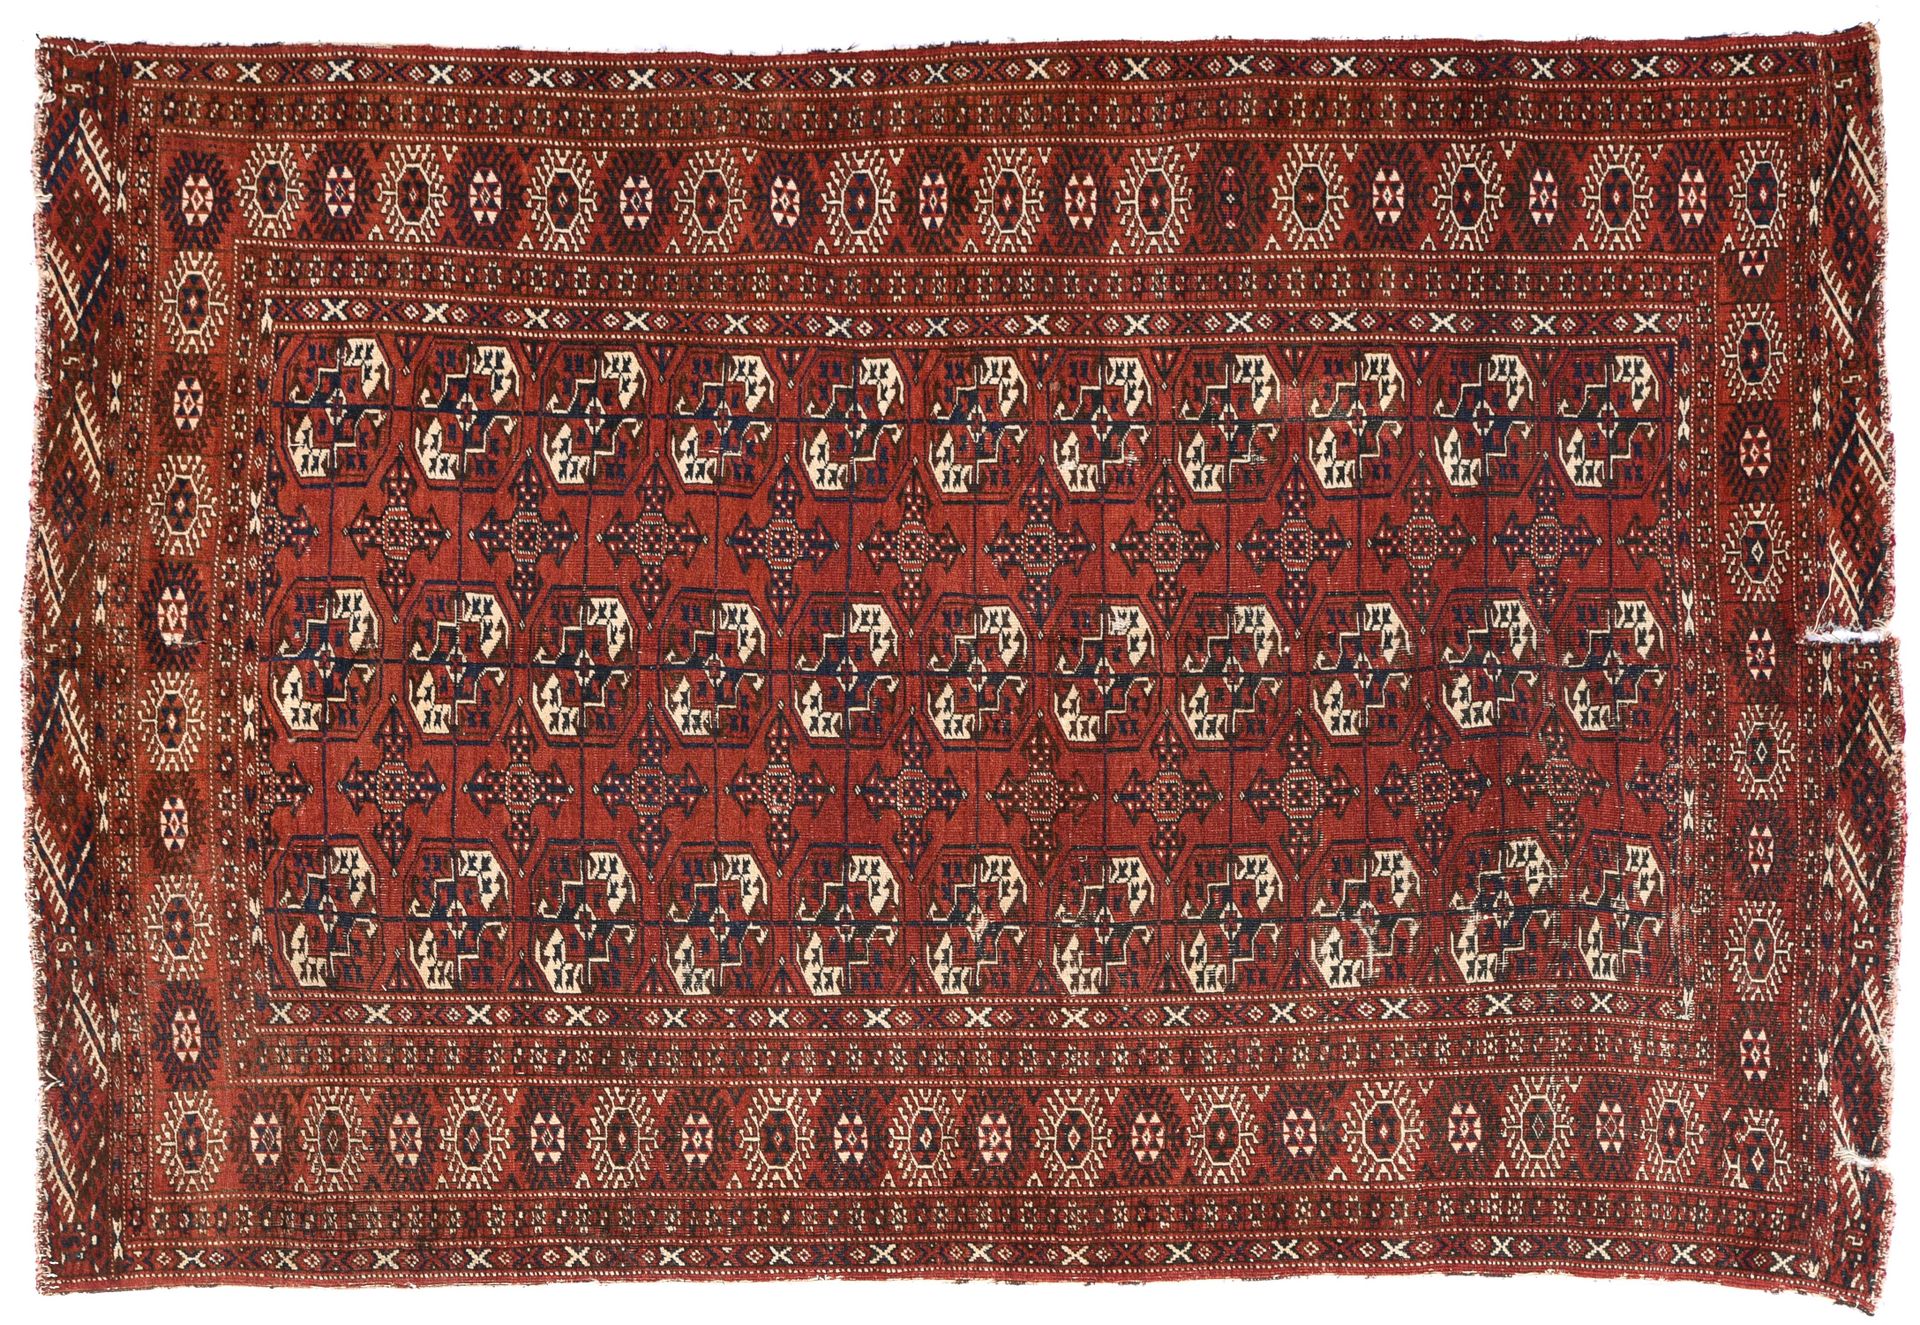 Tapis Boukhara 布哈拉地毯



红色背景，装饰有三排11个古尔邦节，几何边框。

磨损：147厘米 长：216厘米